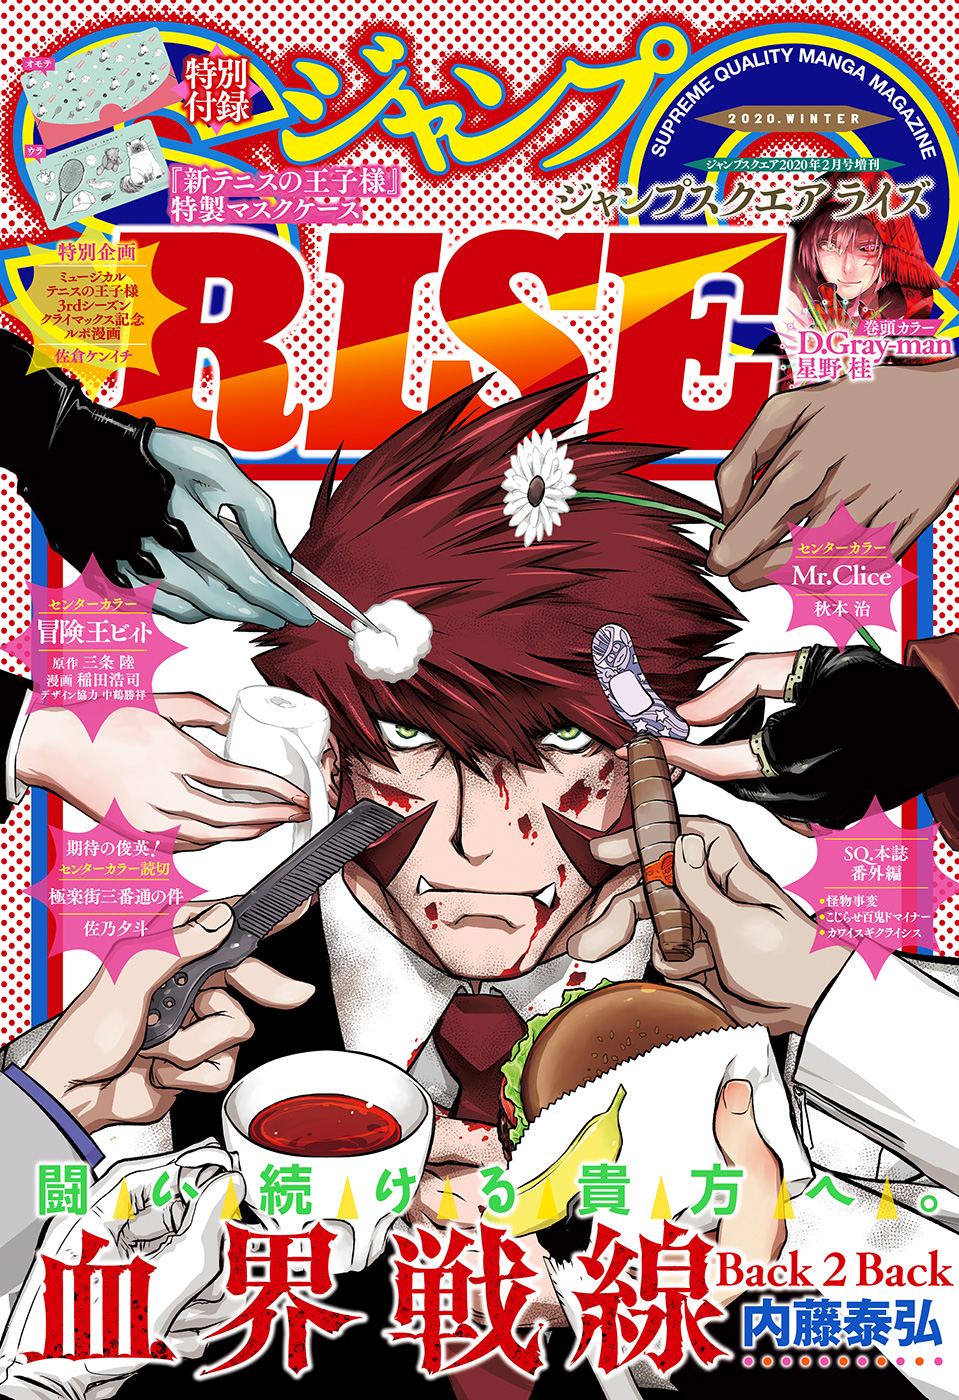 ジャンプSQ. RISE 2020 WINTER - ジャンプSQ.編集部 - 漫画・ラノベ